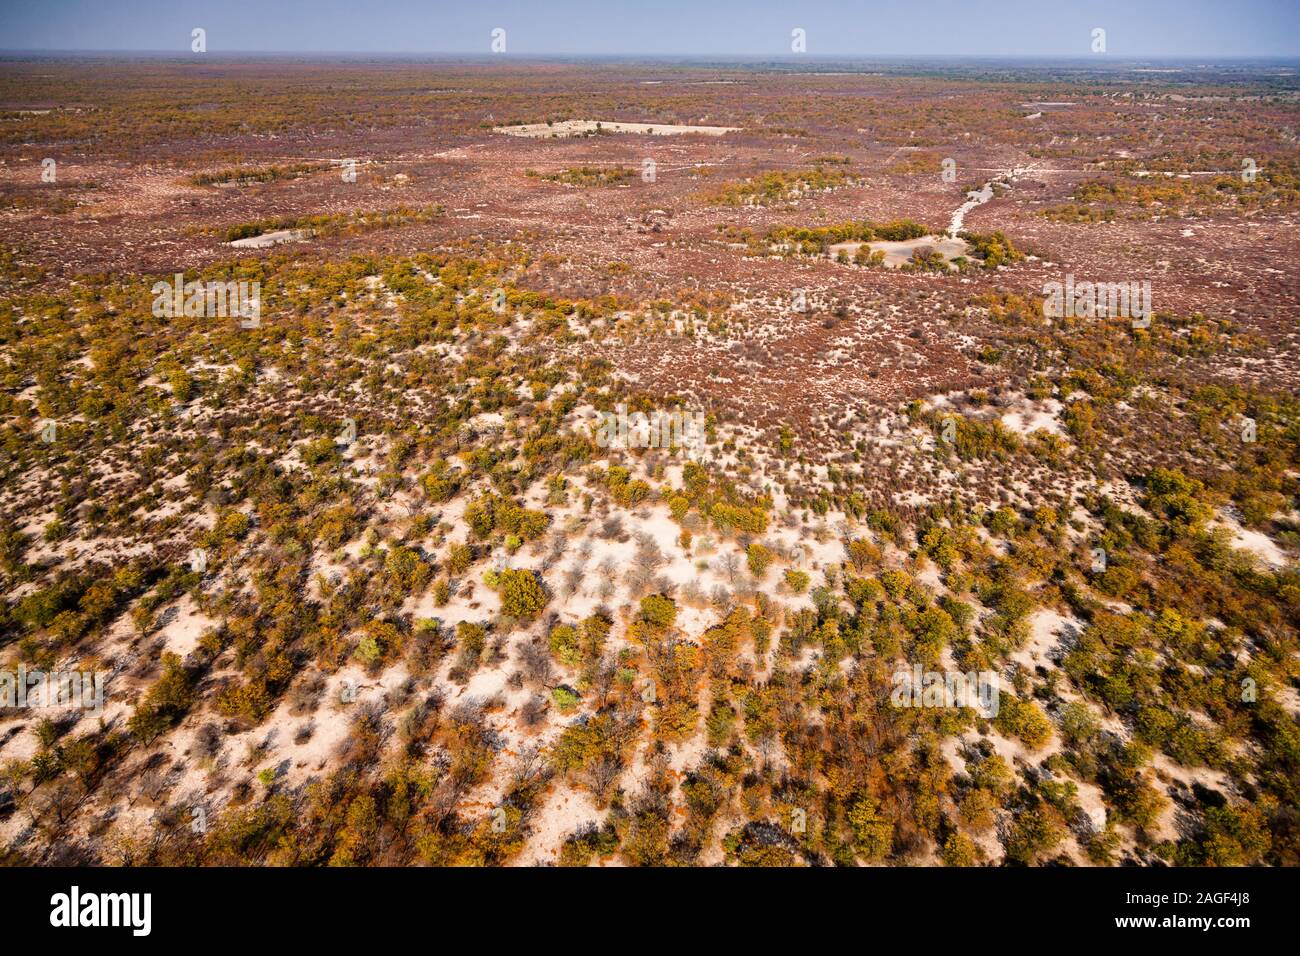 Buissons et zone désertique près de Maun, vue aérienne du delta d'Okavango, vol en hélicoptère, Botswana, Afrique australe, Afrique Banque D'Images